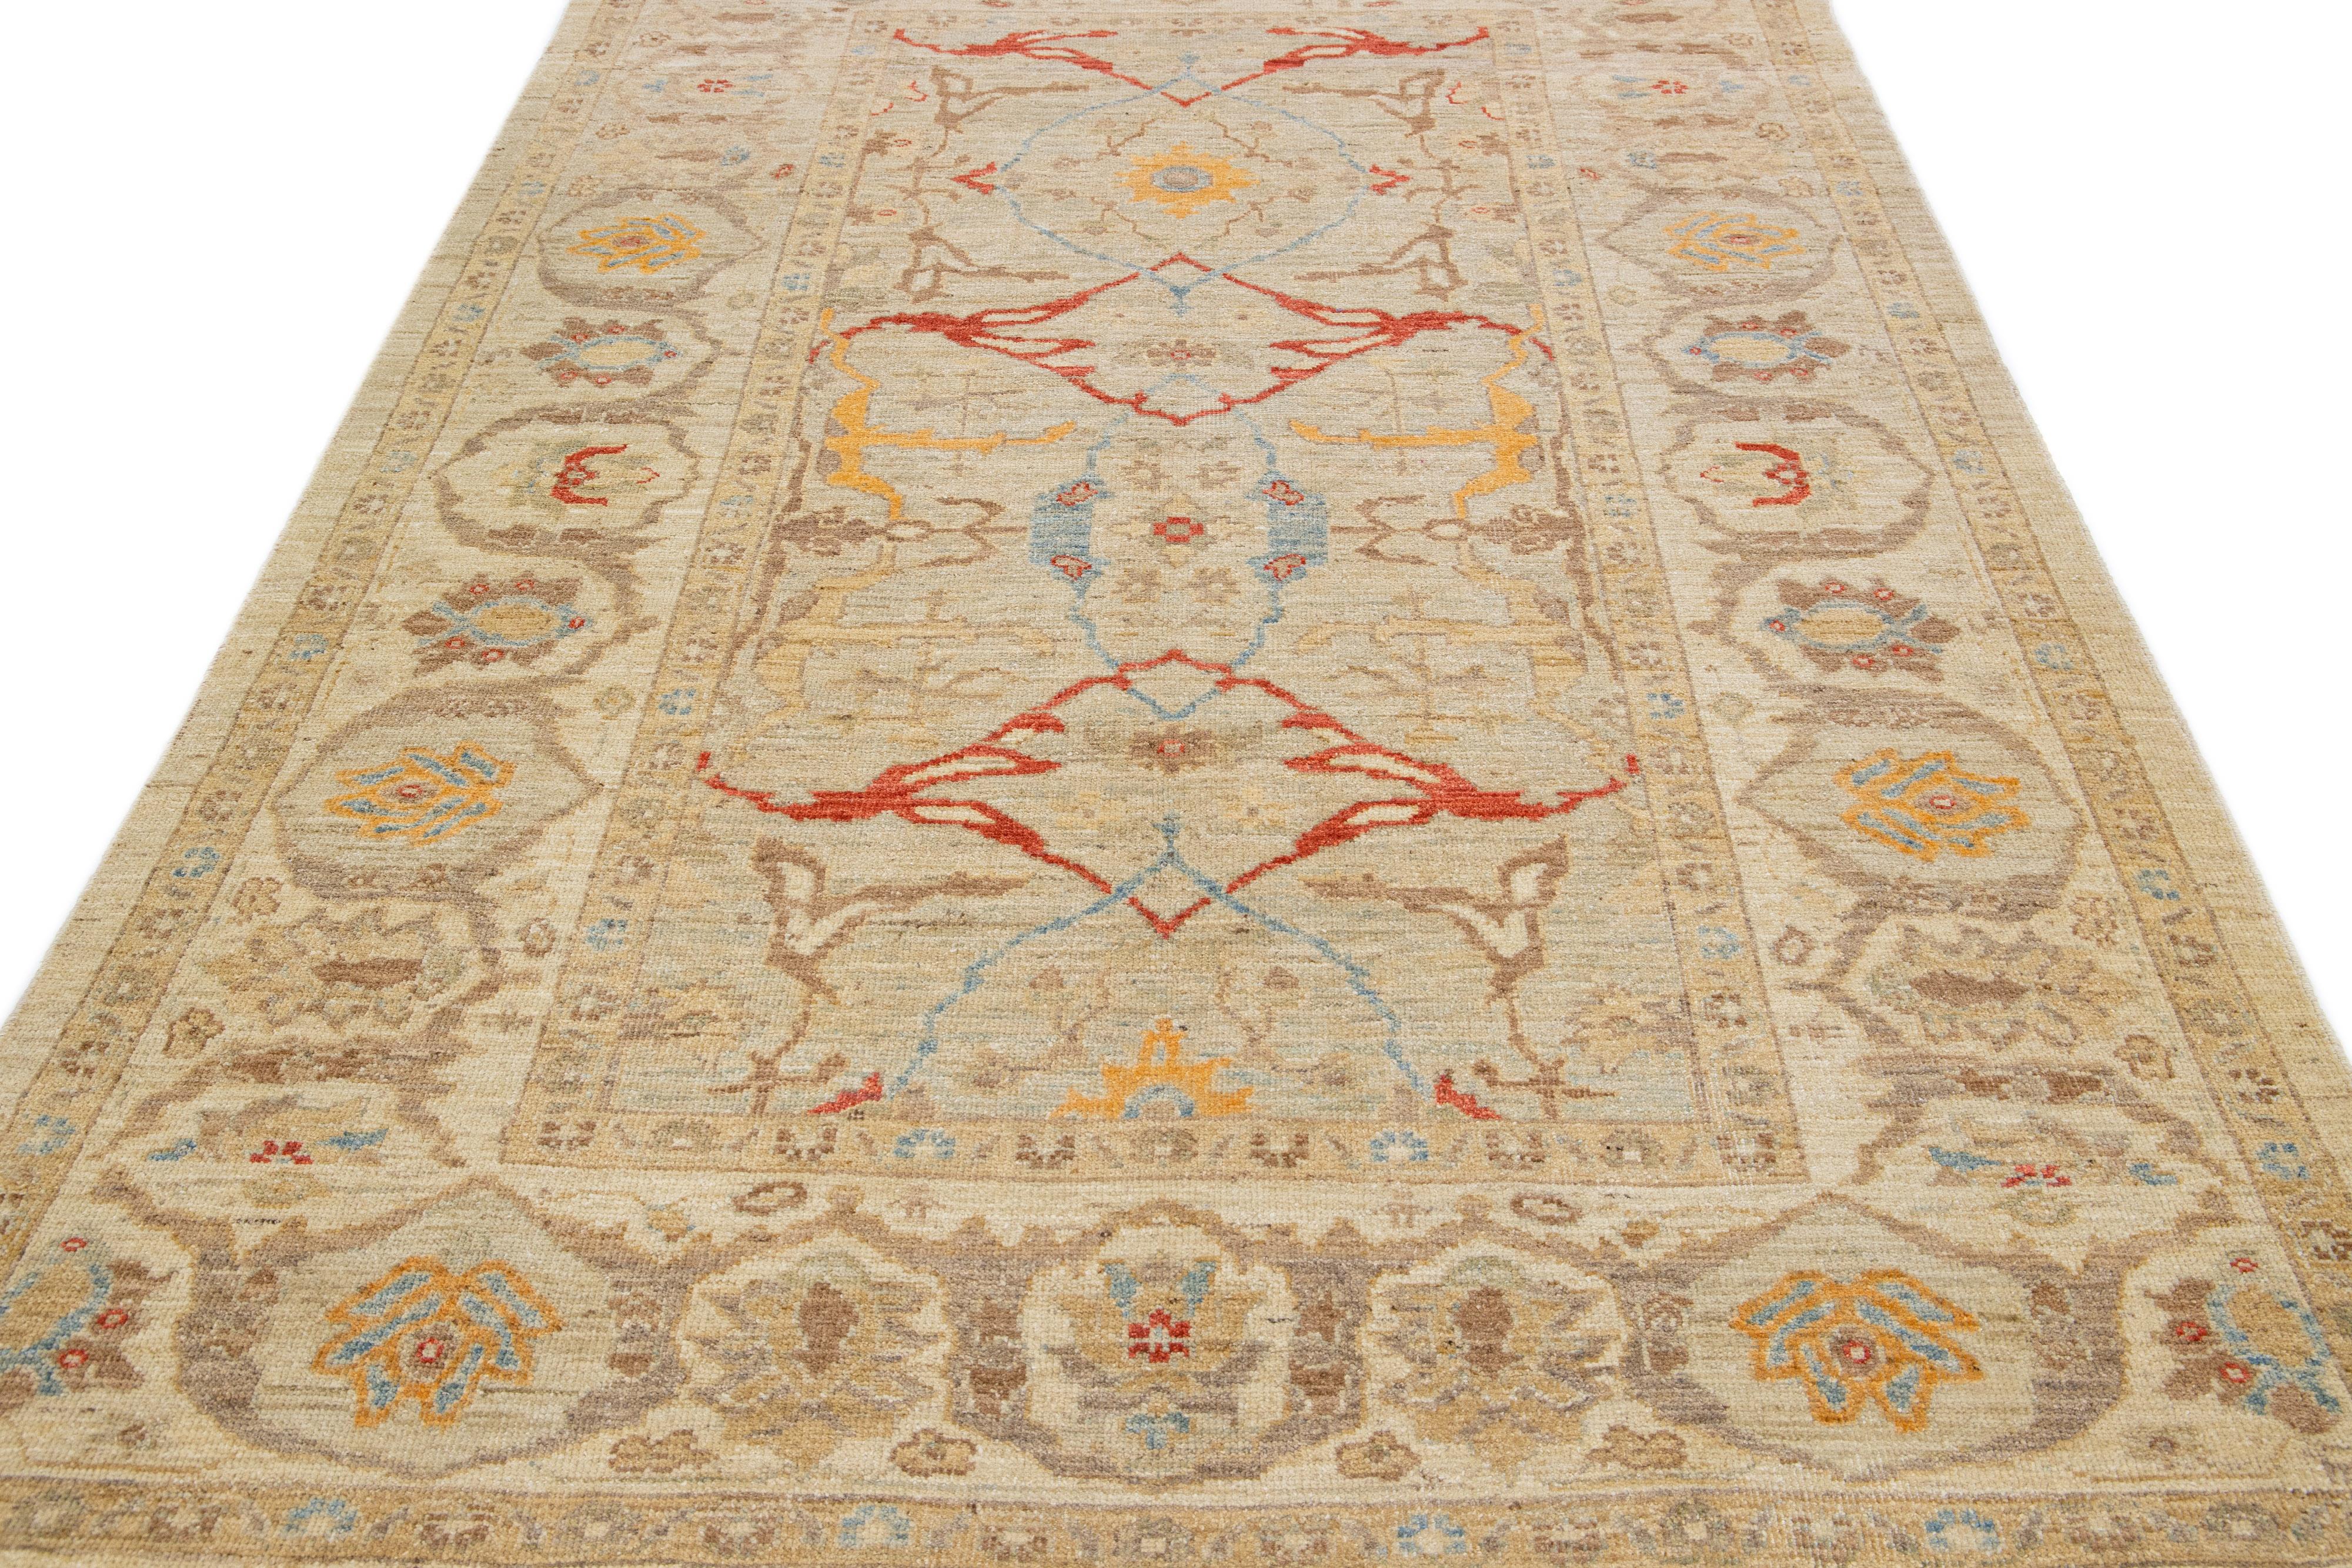 Magnifique tapis moderne Sultanabad en laine nouée à la main avec un champ de couleur beige. Ce tapis a un cadre conçu avec des accents rouges, orange et bleus dans un magnifique motif floral.

Ce tapis mesure : 6'1